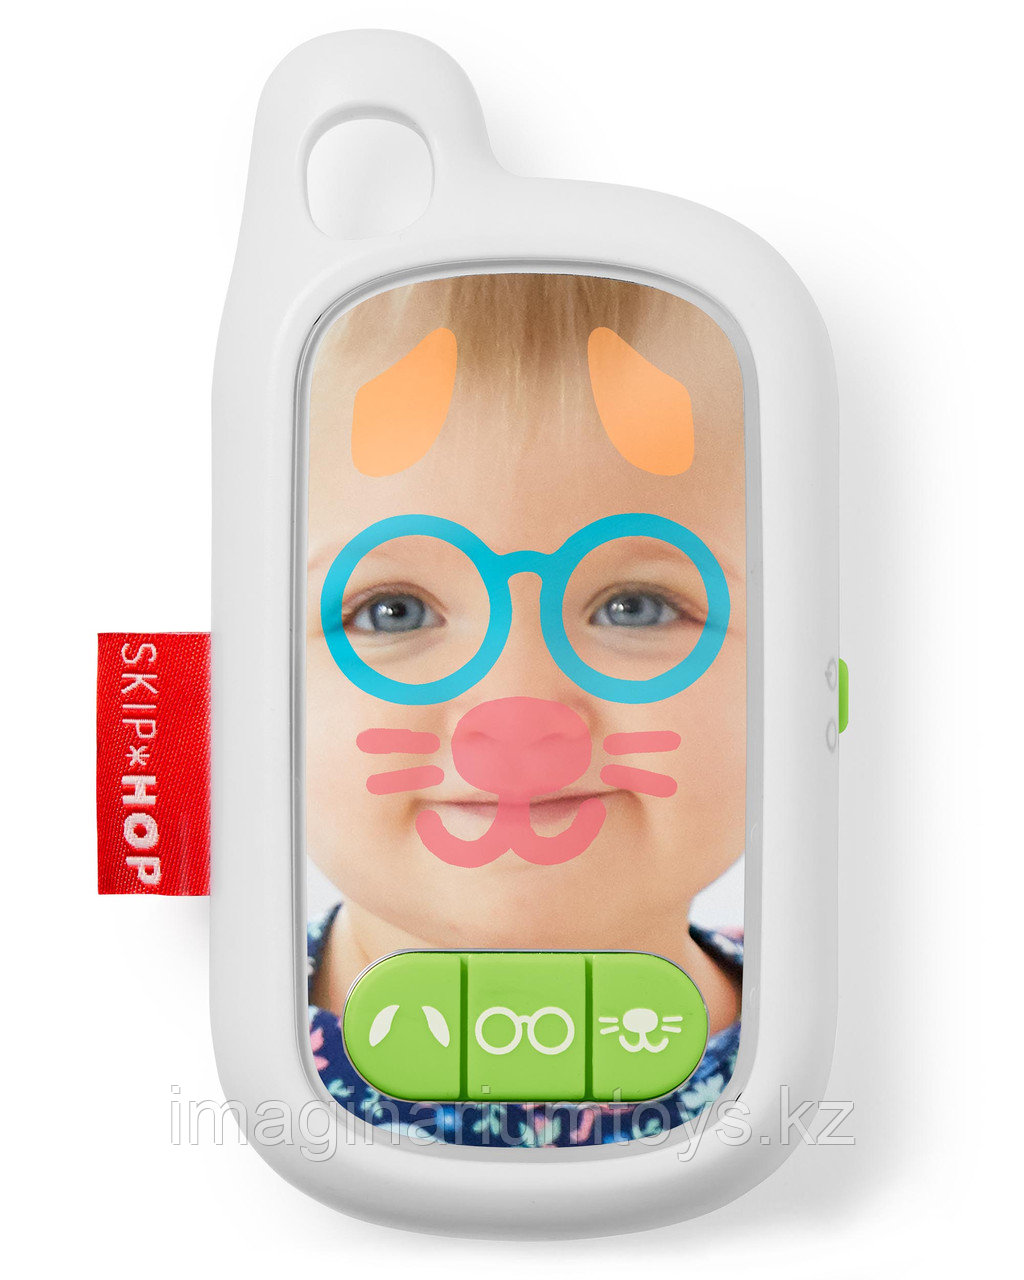 Игрушка для детей от 6 месяцев «Selfie Phone», фото 1